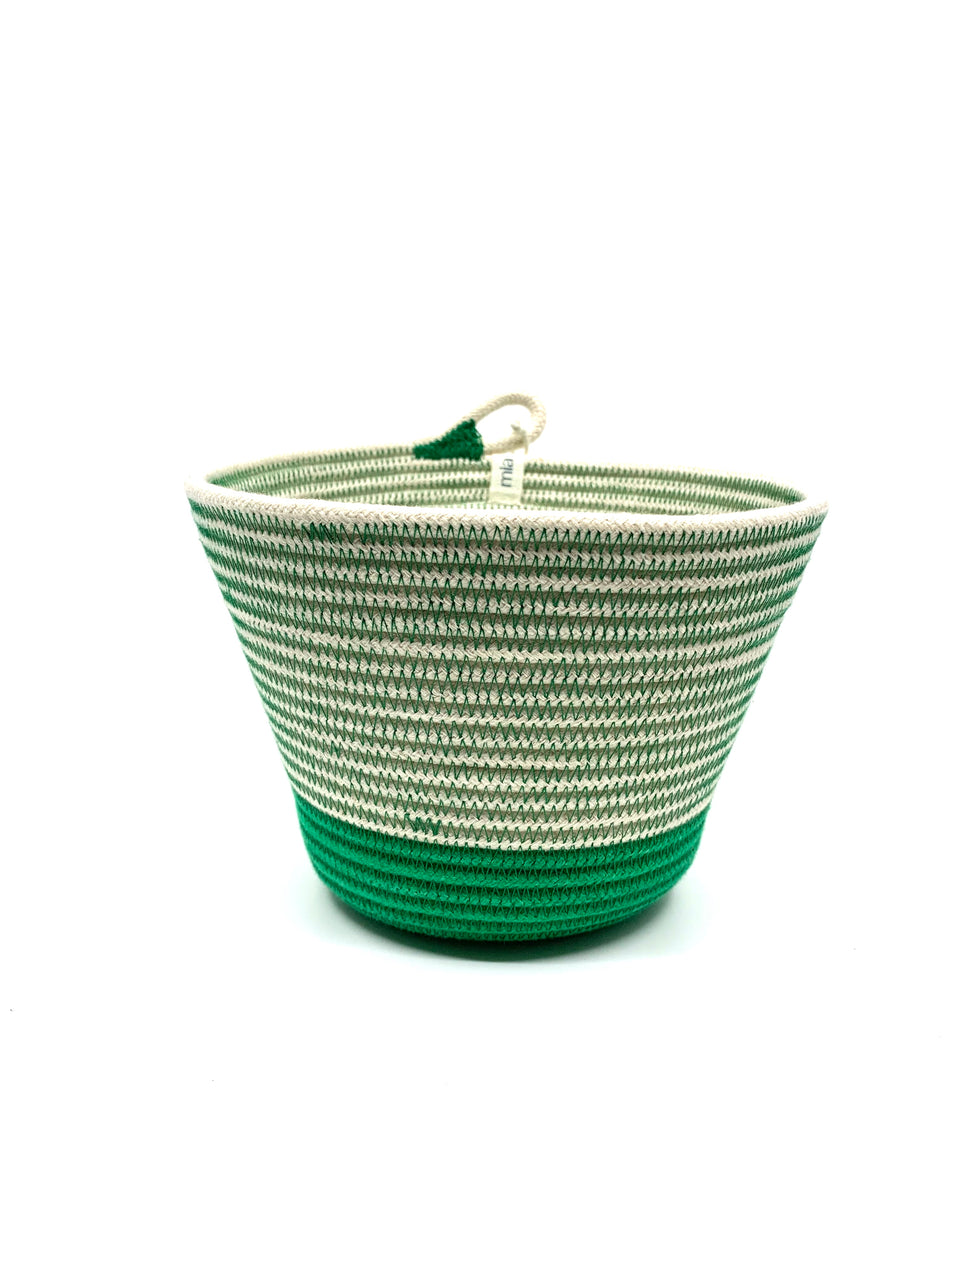 Greenery Planter Basket